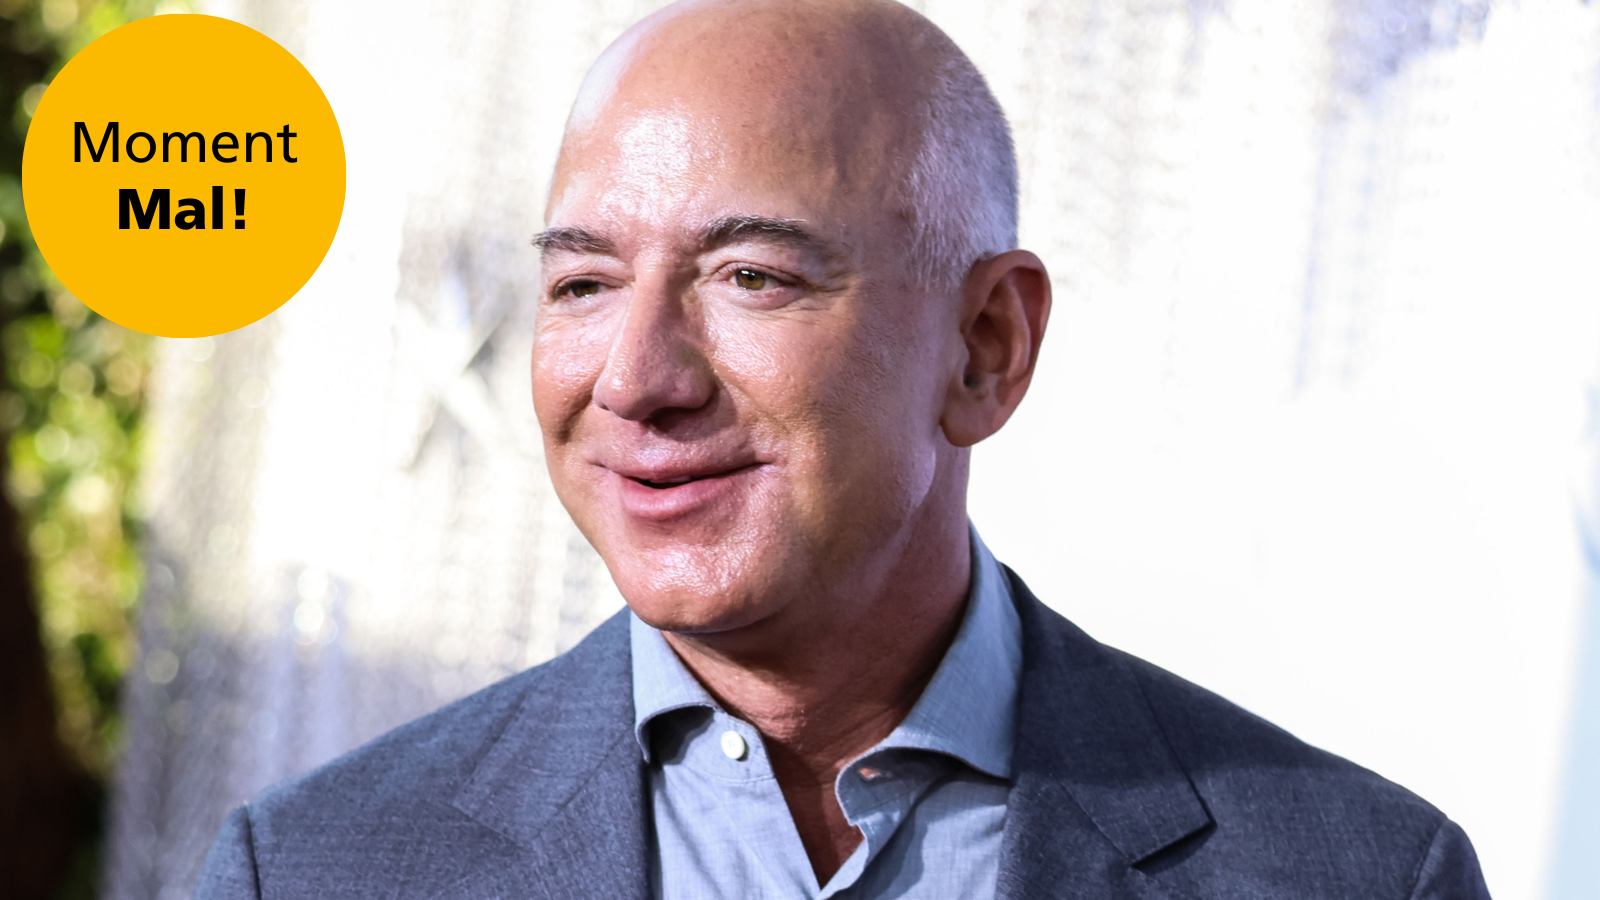 Happy Birthday Jeff Bezos!